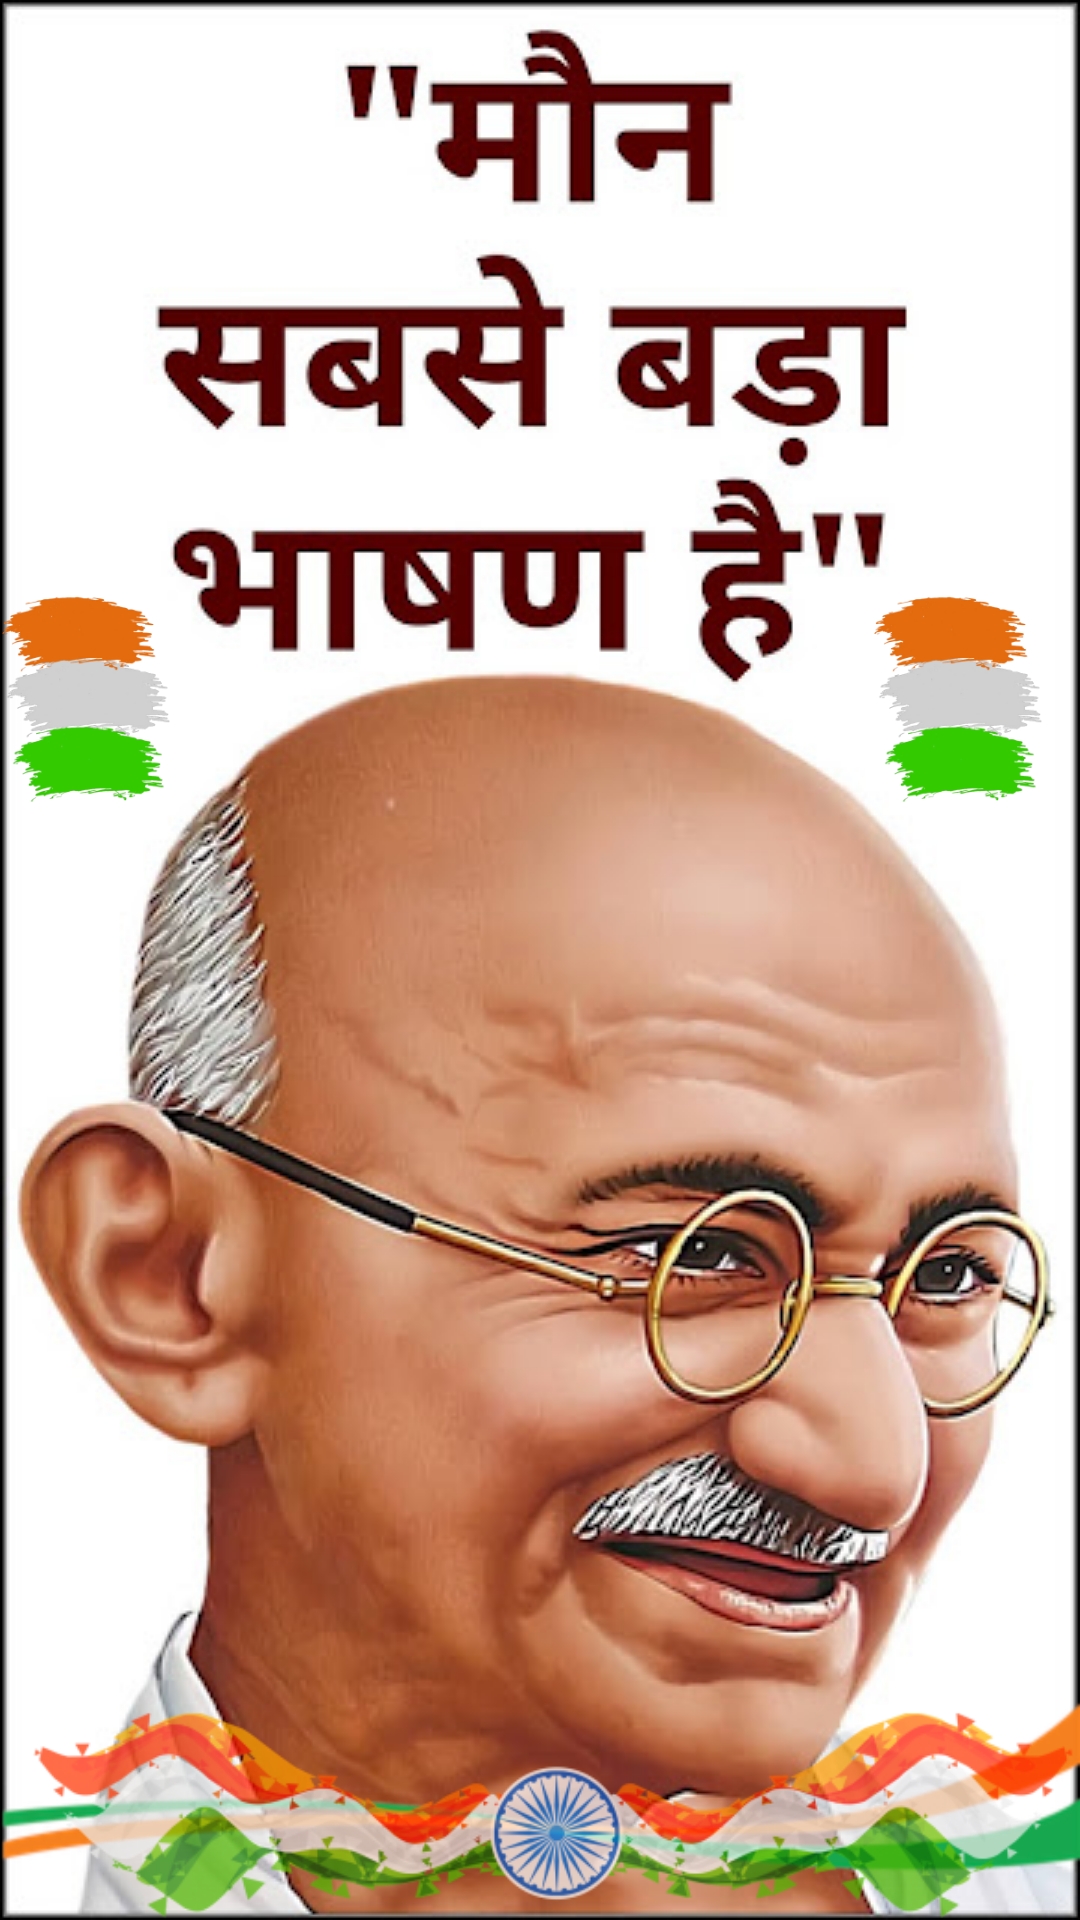 Mahatma Gandhi quotes in Hindi images-  Quotes in hindi by Mahatma gandhi-  Quotes images in Hindi-